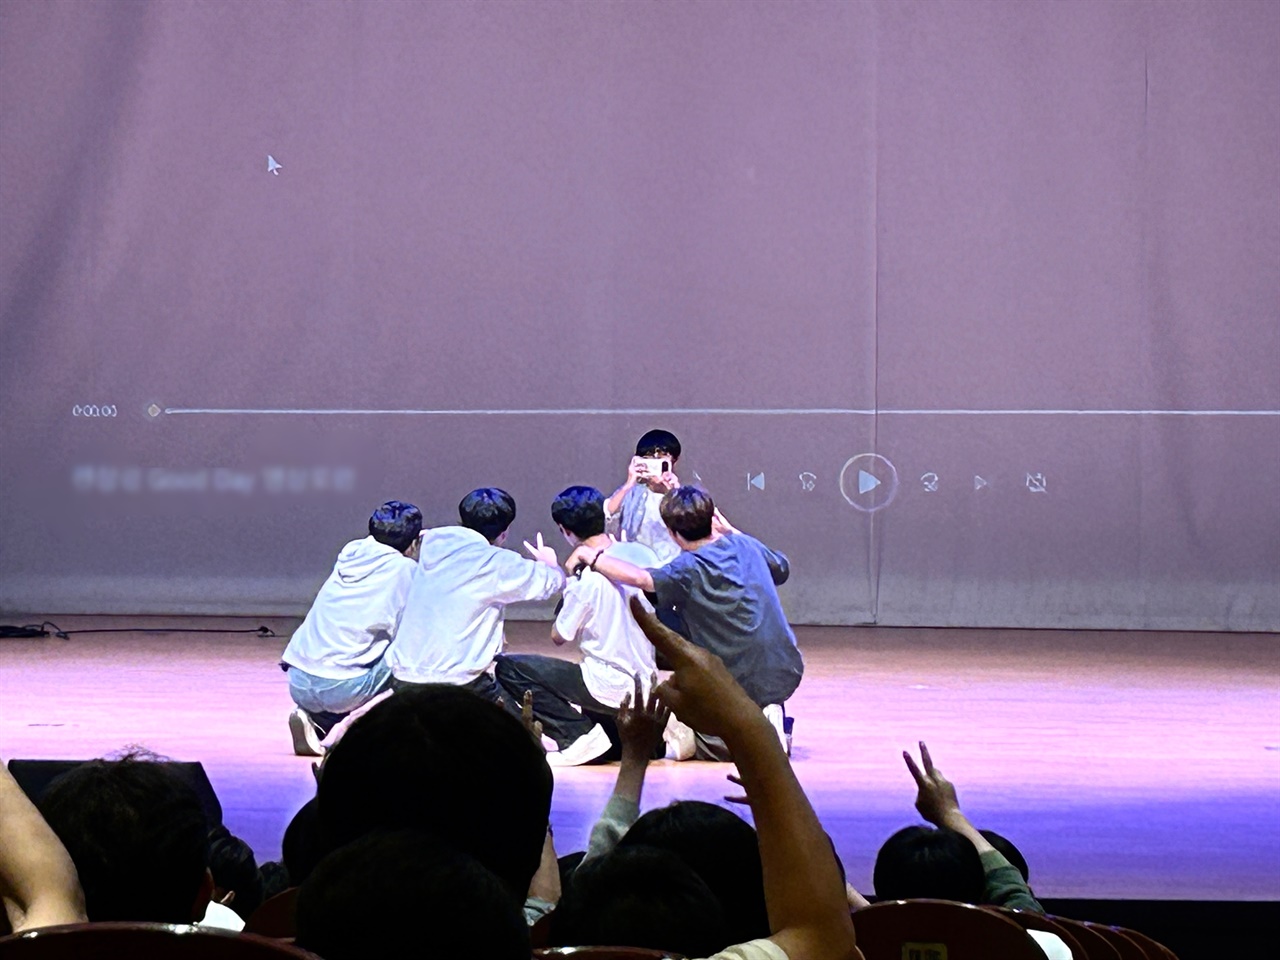 아이돌 가수가 출연하는 대학 축제 못지않게 톡톡튀는 고등학교 축제 현장 열기가 뜨겁다.